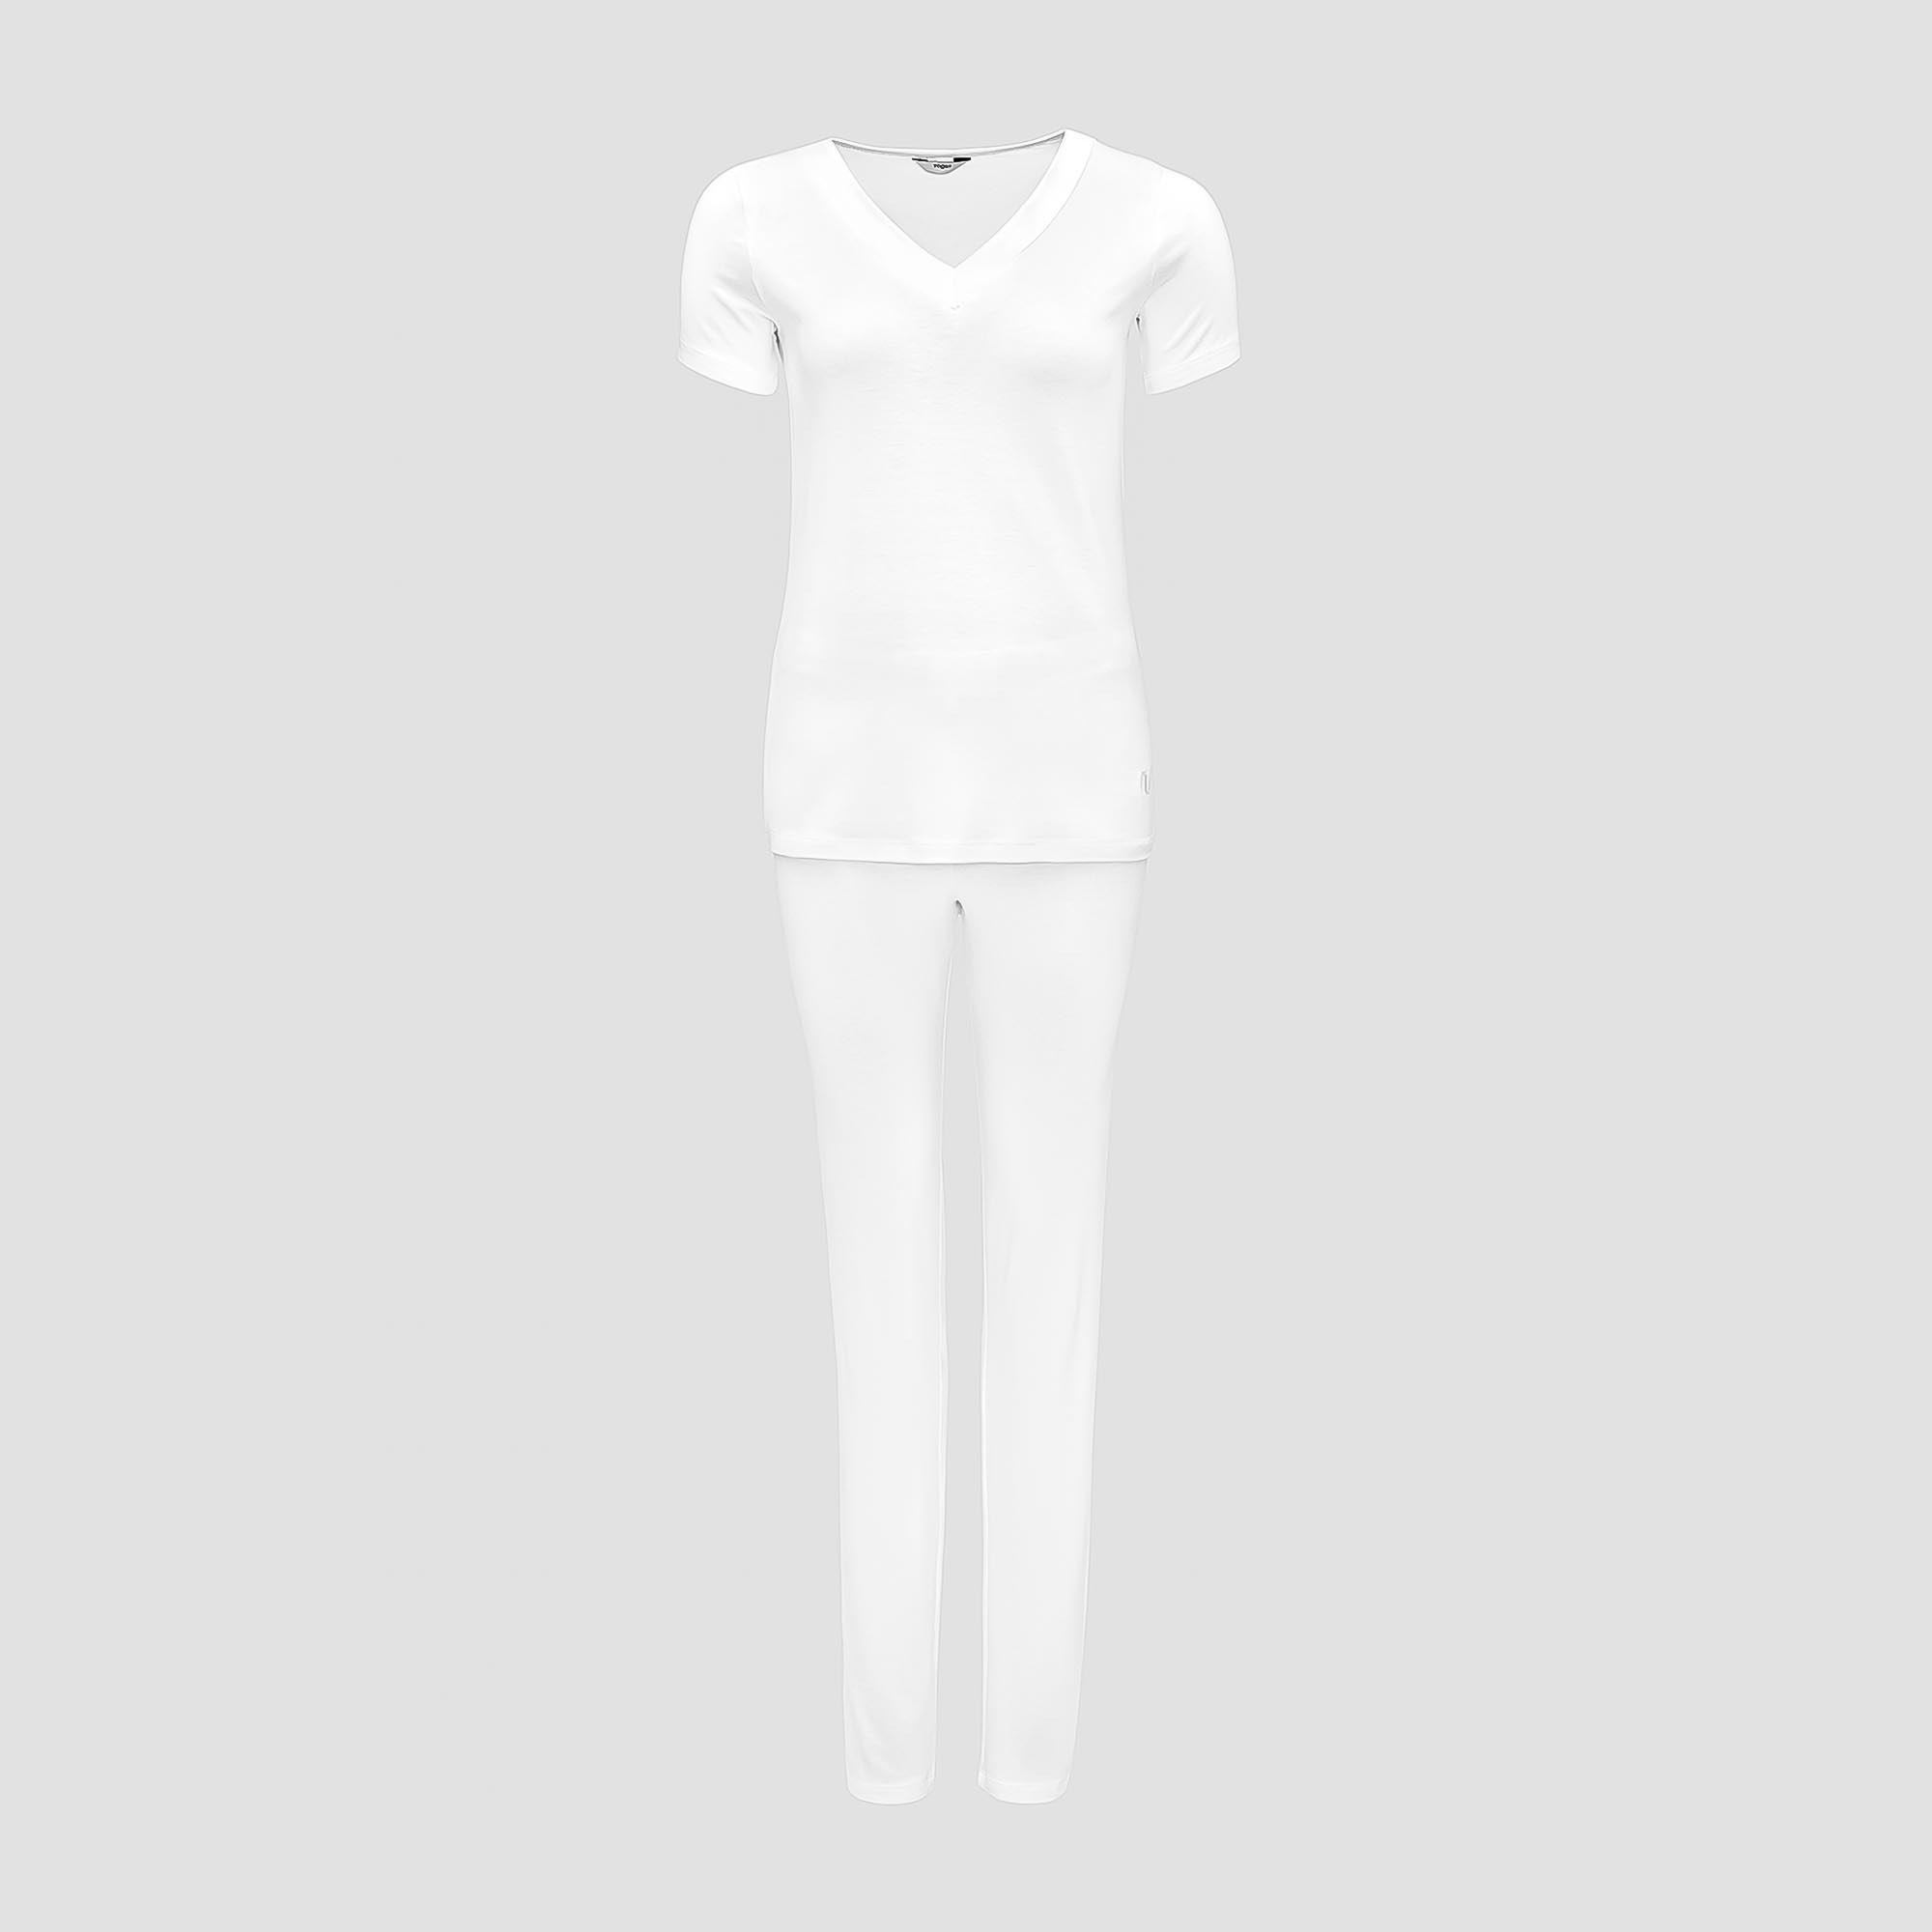 Пижама Togas Ингелла белая женская M(46) 2 предмета пижама togas ингелла белая женская l 48 2 предмета